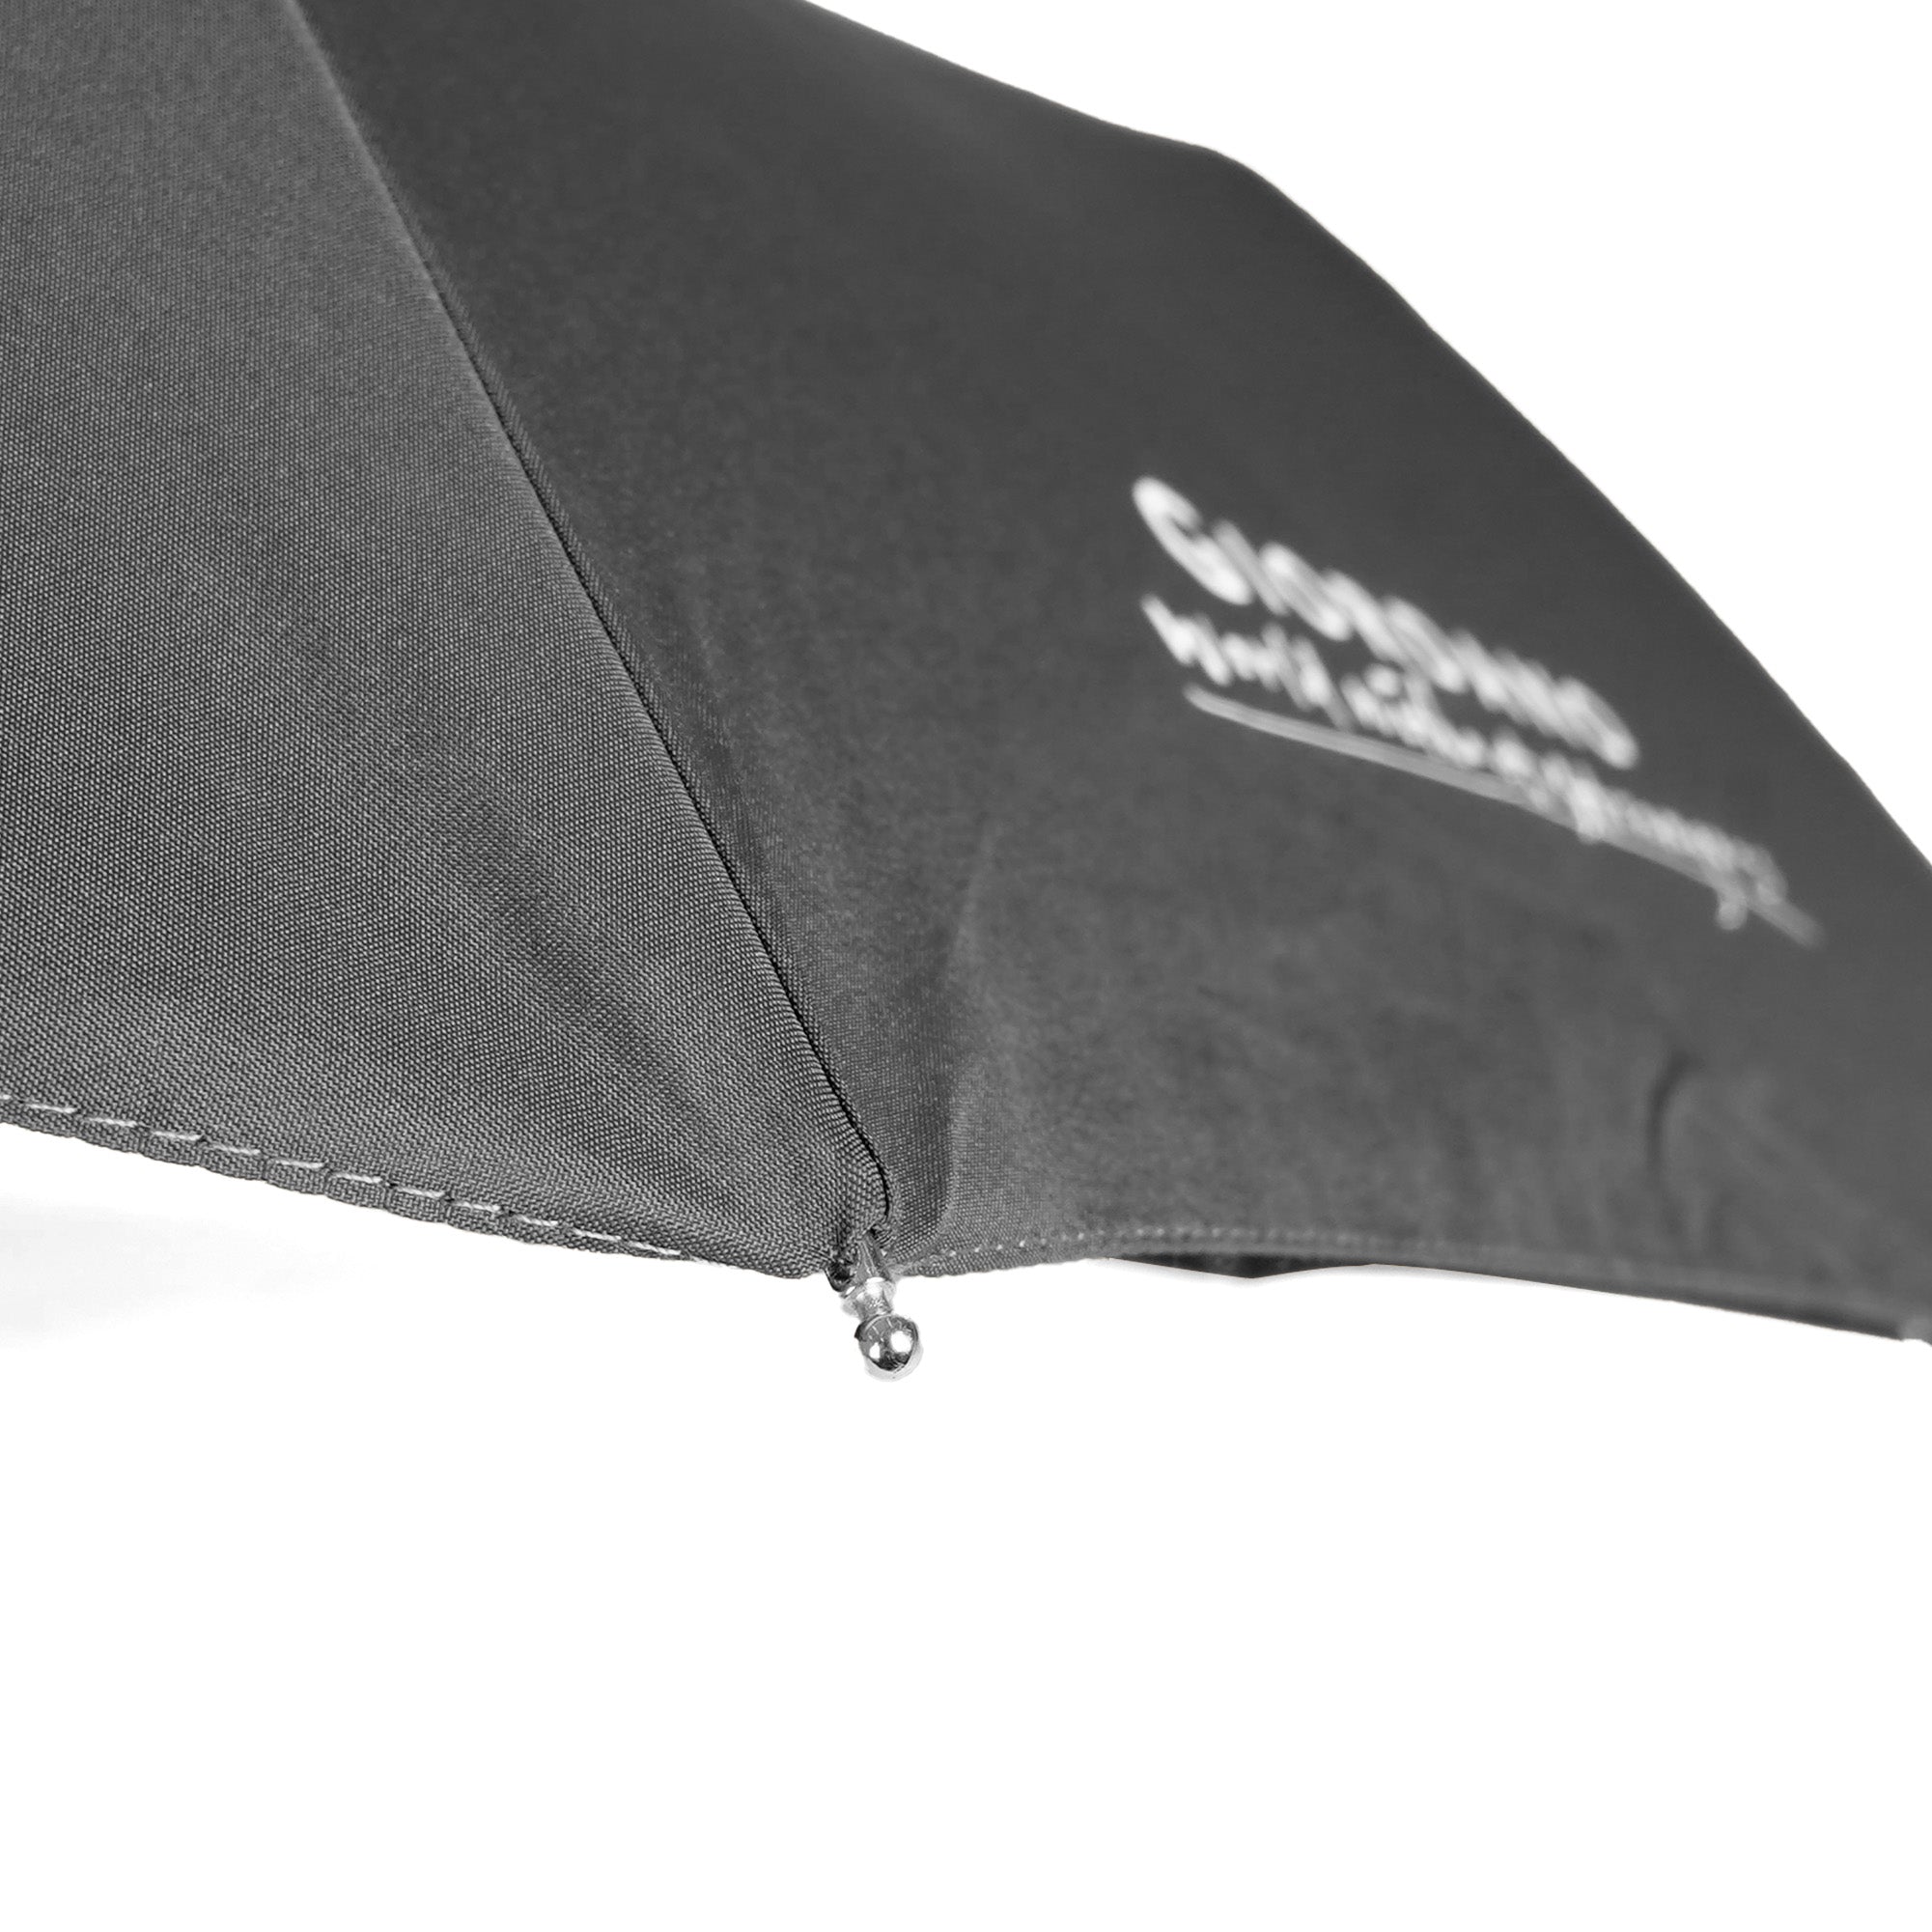 Short Umbrella